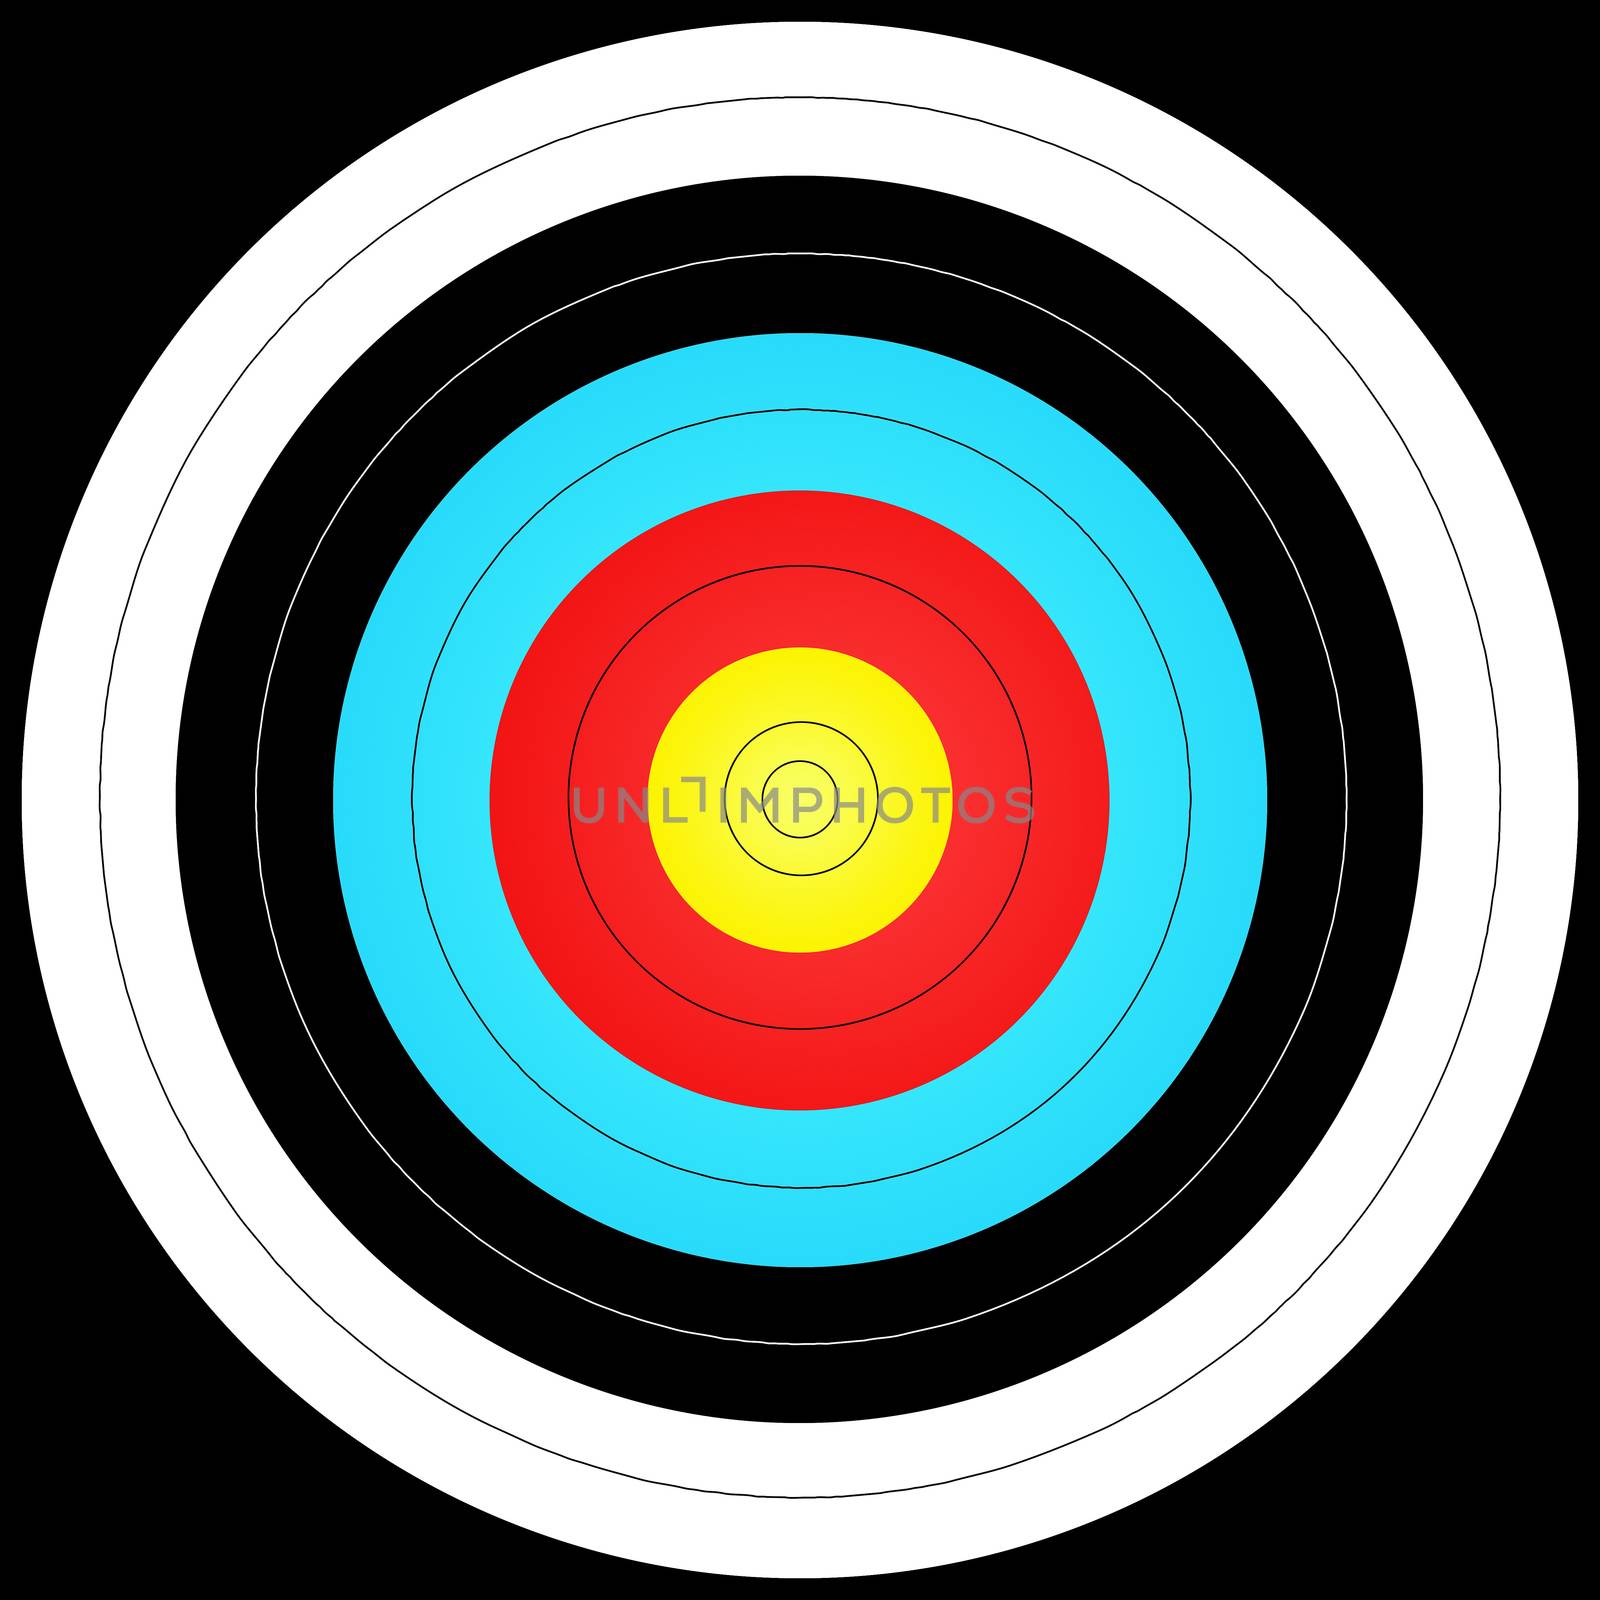 the image model of the bullseye